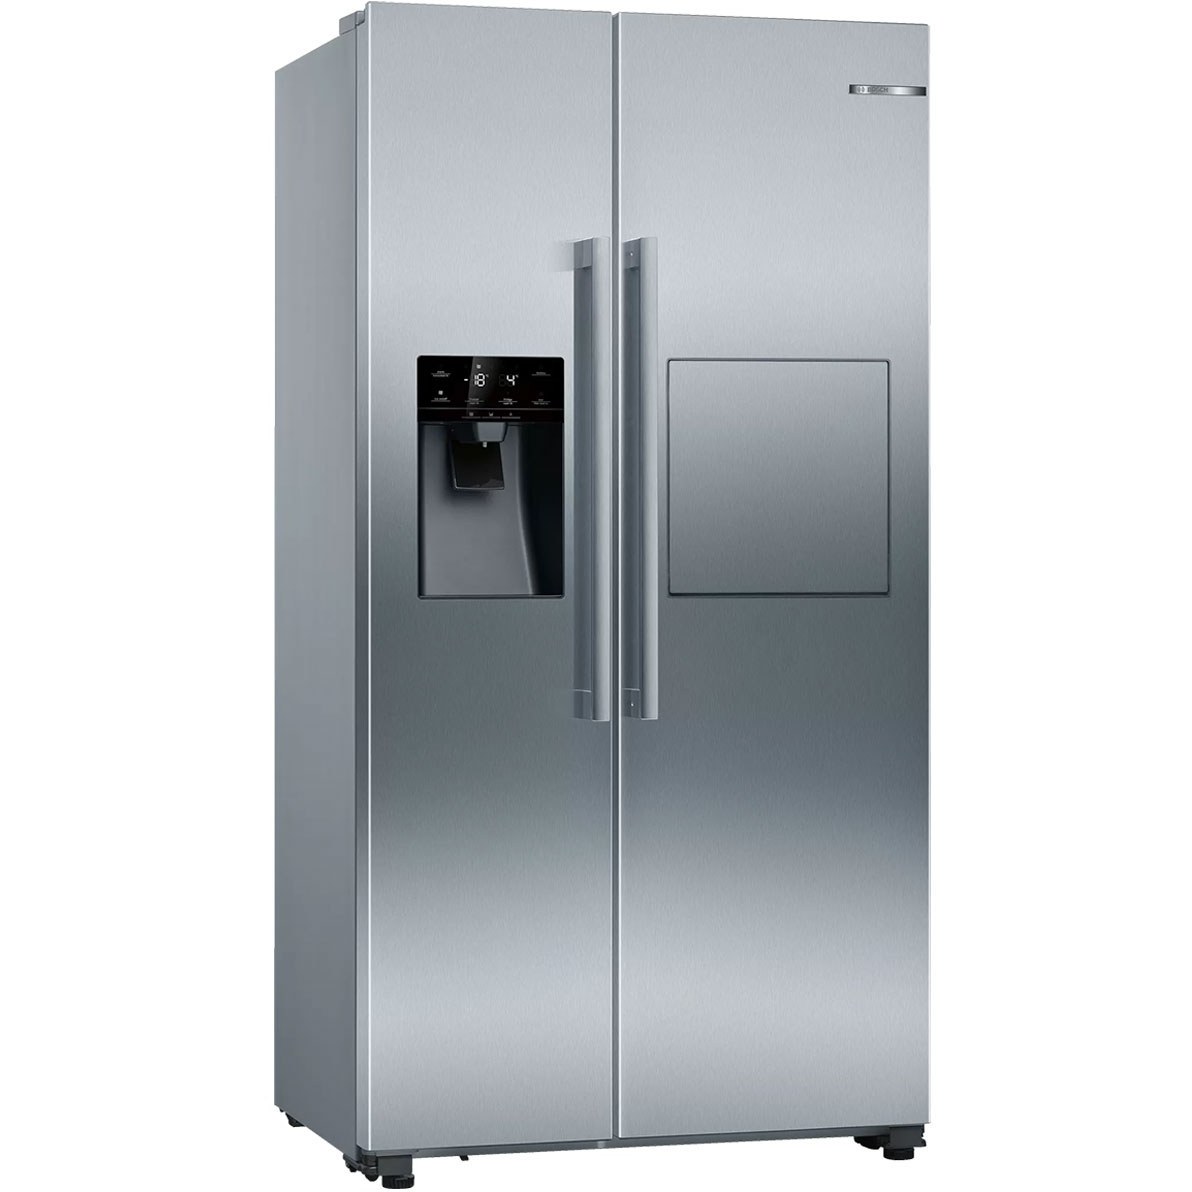 خرید و قیمت یخچال فریزر ساید بای ساید بوش مدل KAG93AI30M ا Bosch KAG93AI30MSide by Side refrigerator | ترب